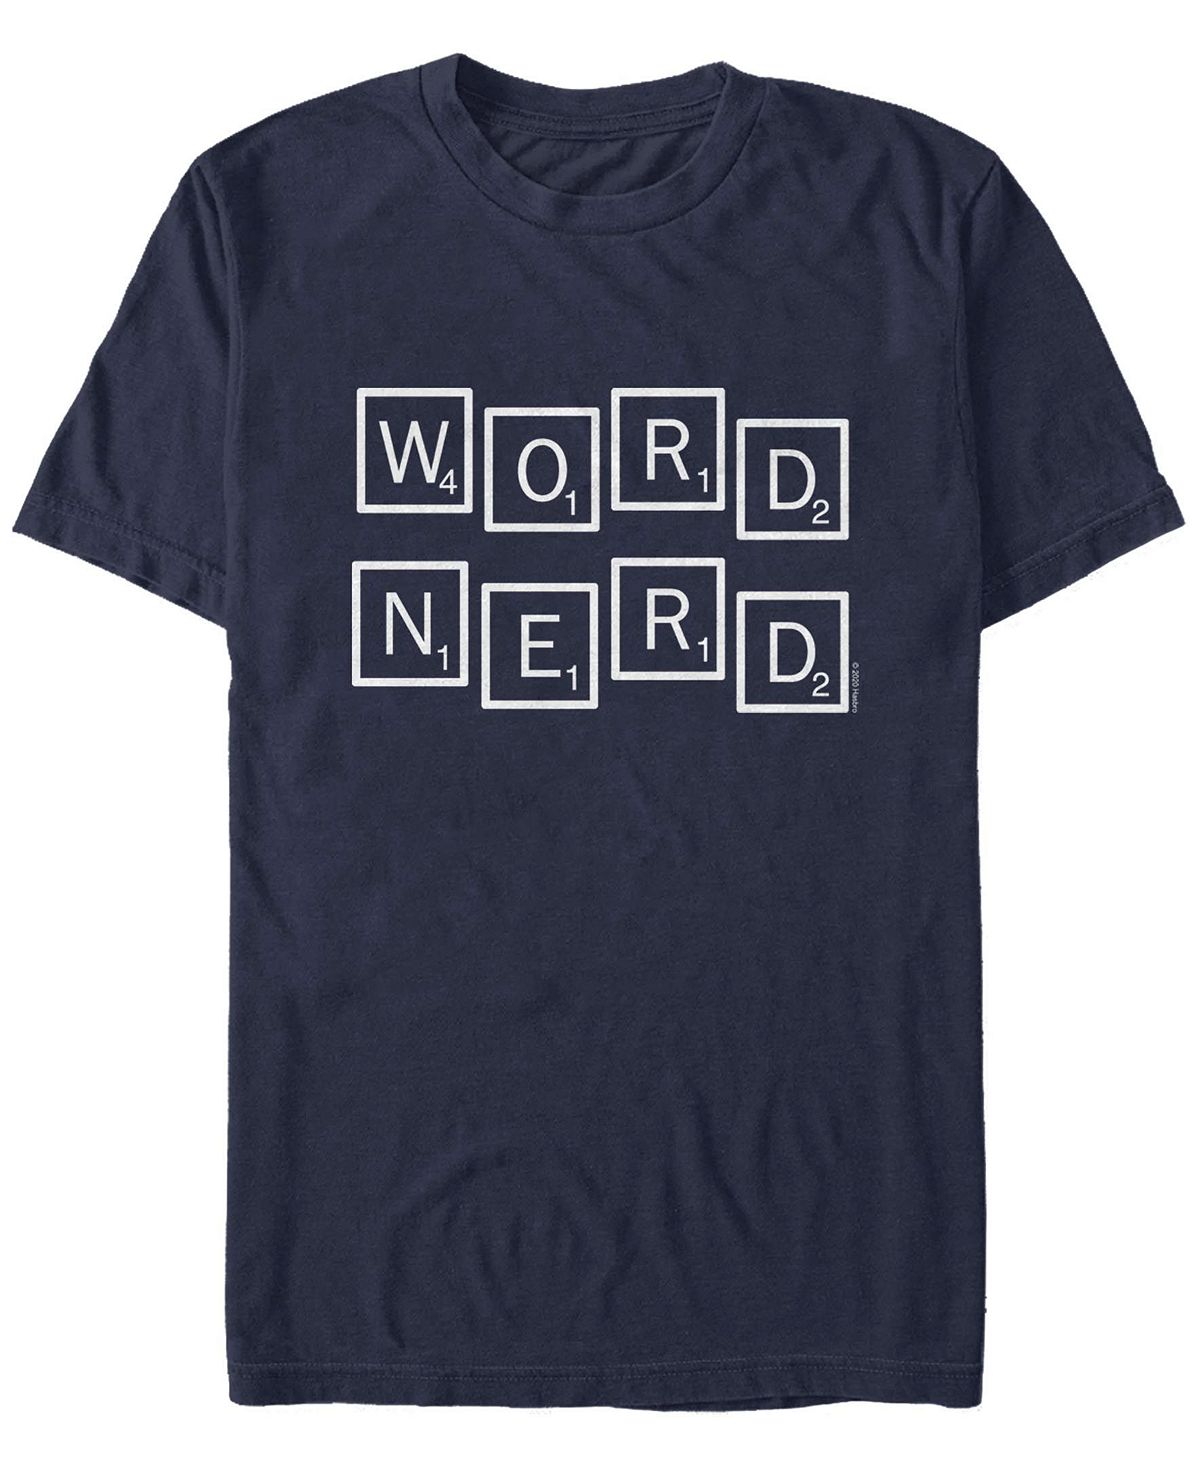 Мужская футболка word nerd с круглым вырезом и короткими рукавами Fifth Sun, синий